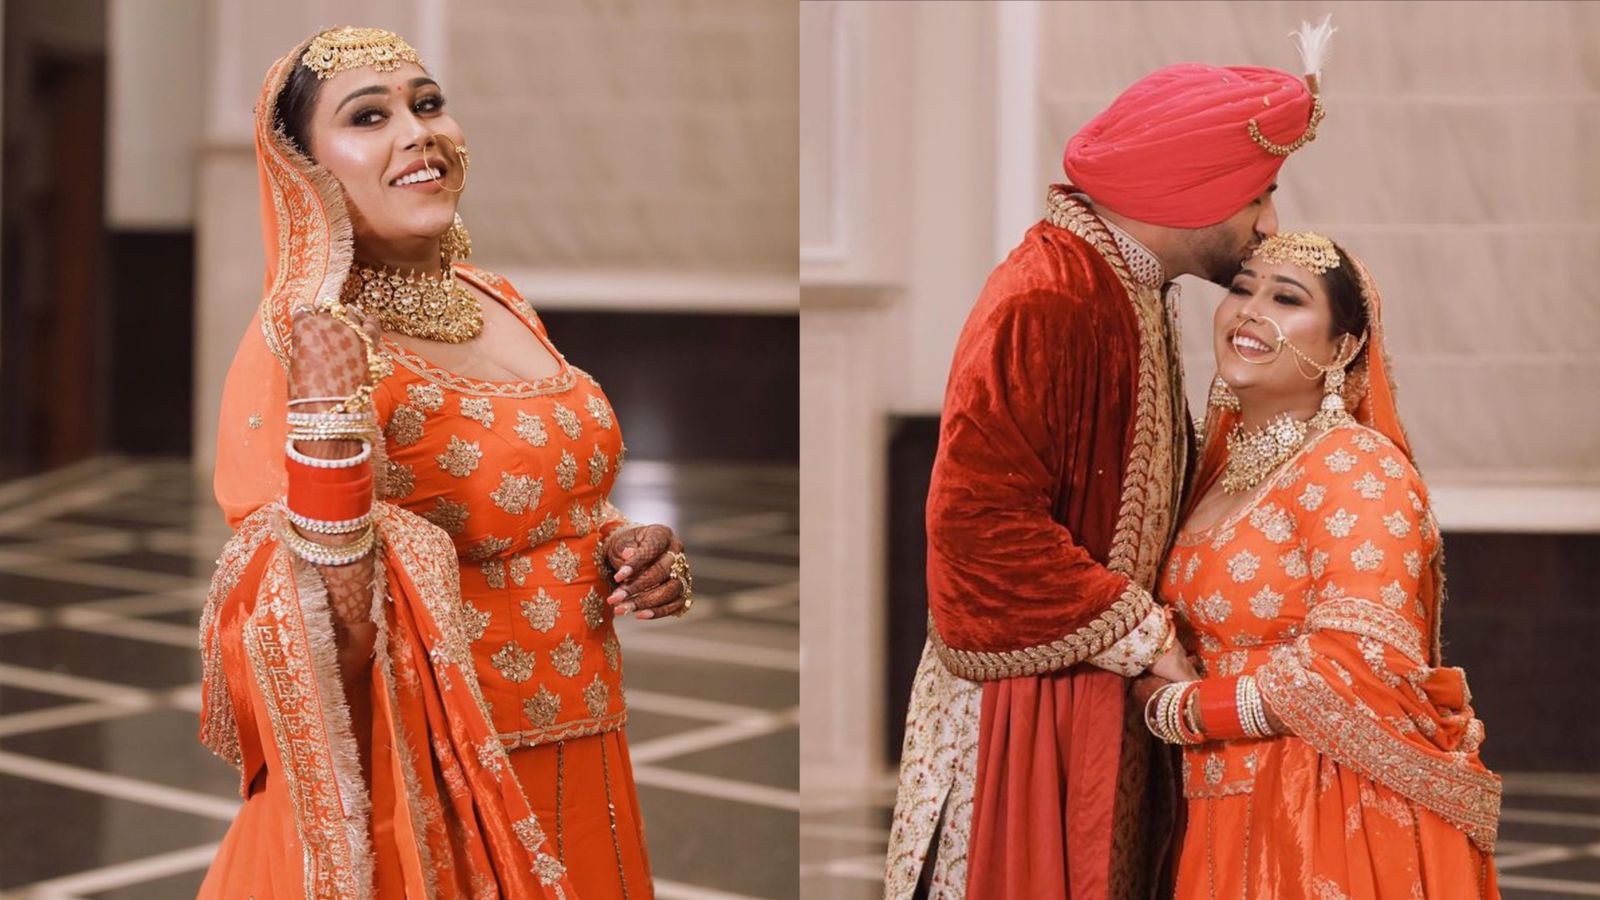 बेहद सुंदर लहंगा पहनकर दुल्हन बनीं ‘तितलियां गर्ल’ Afsana Khan, अपनी शादी में गाना गाकर लोगों को बनाया दीवाना